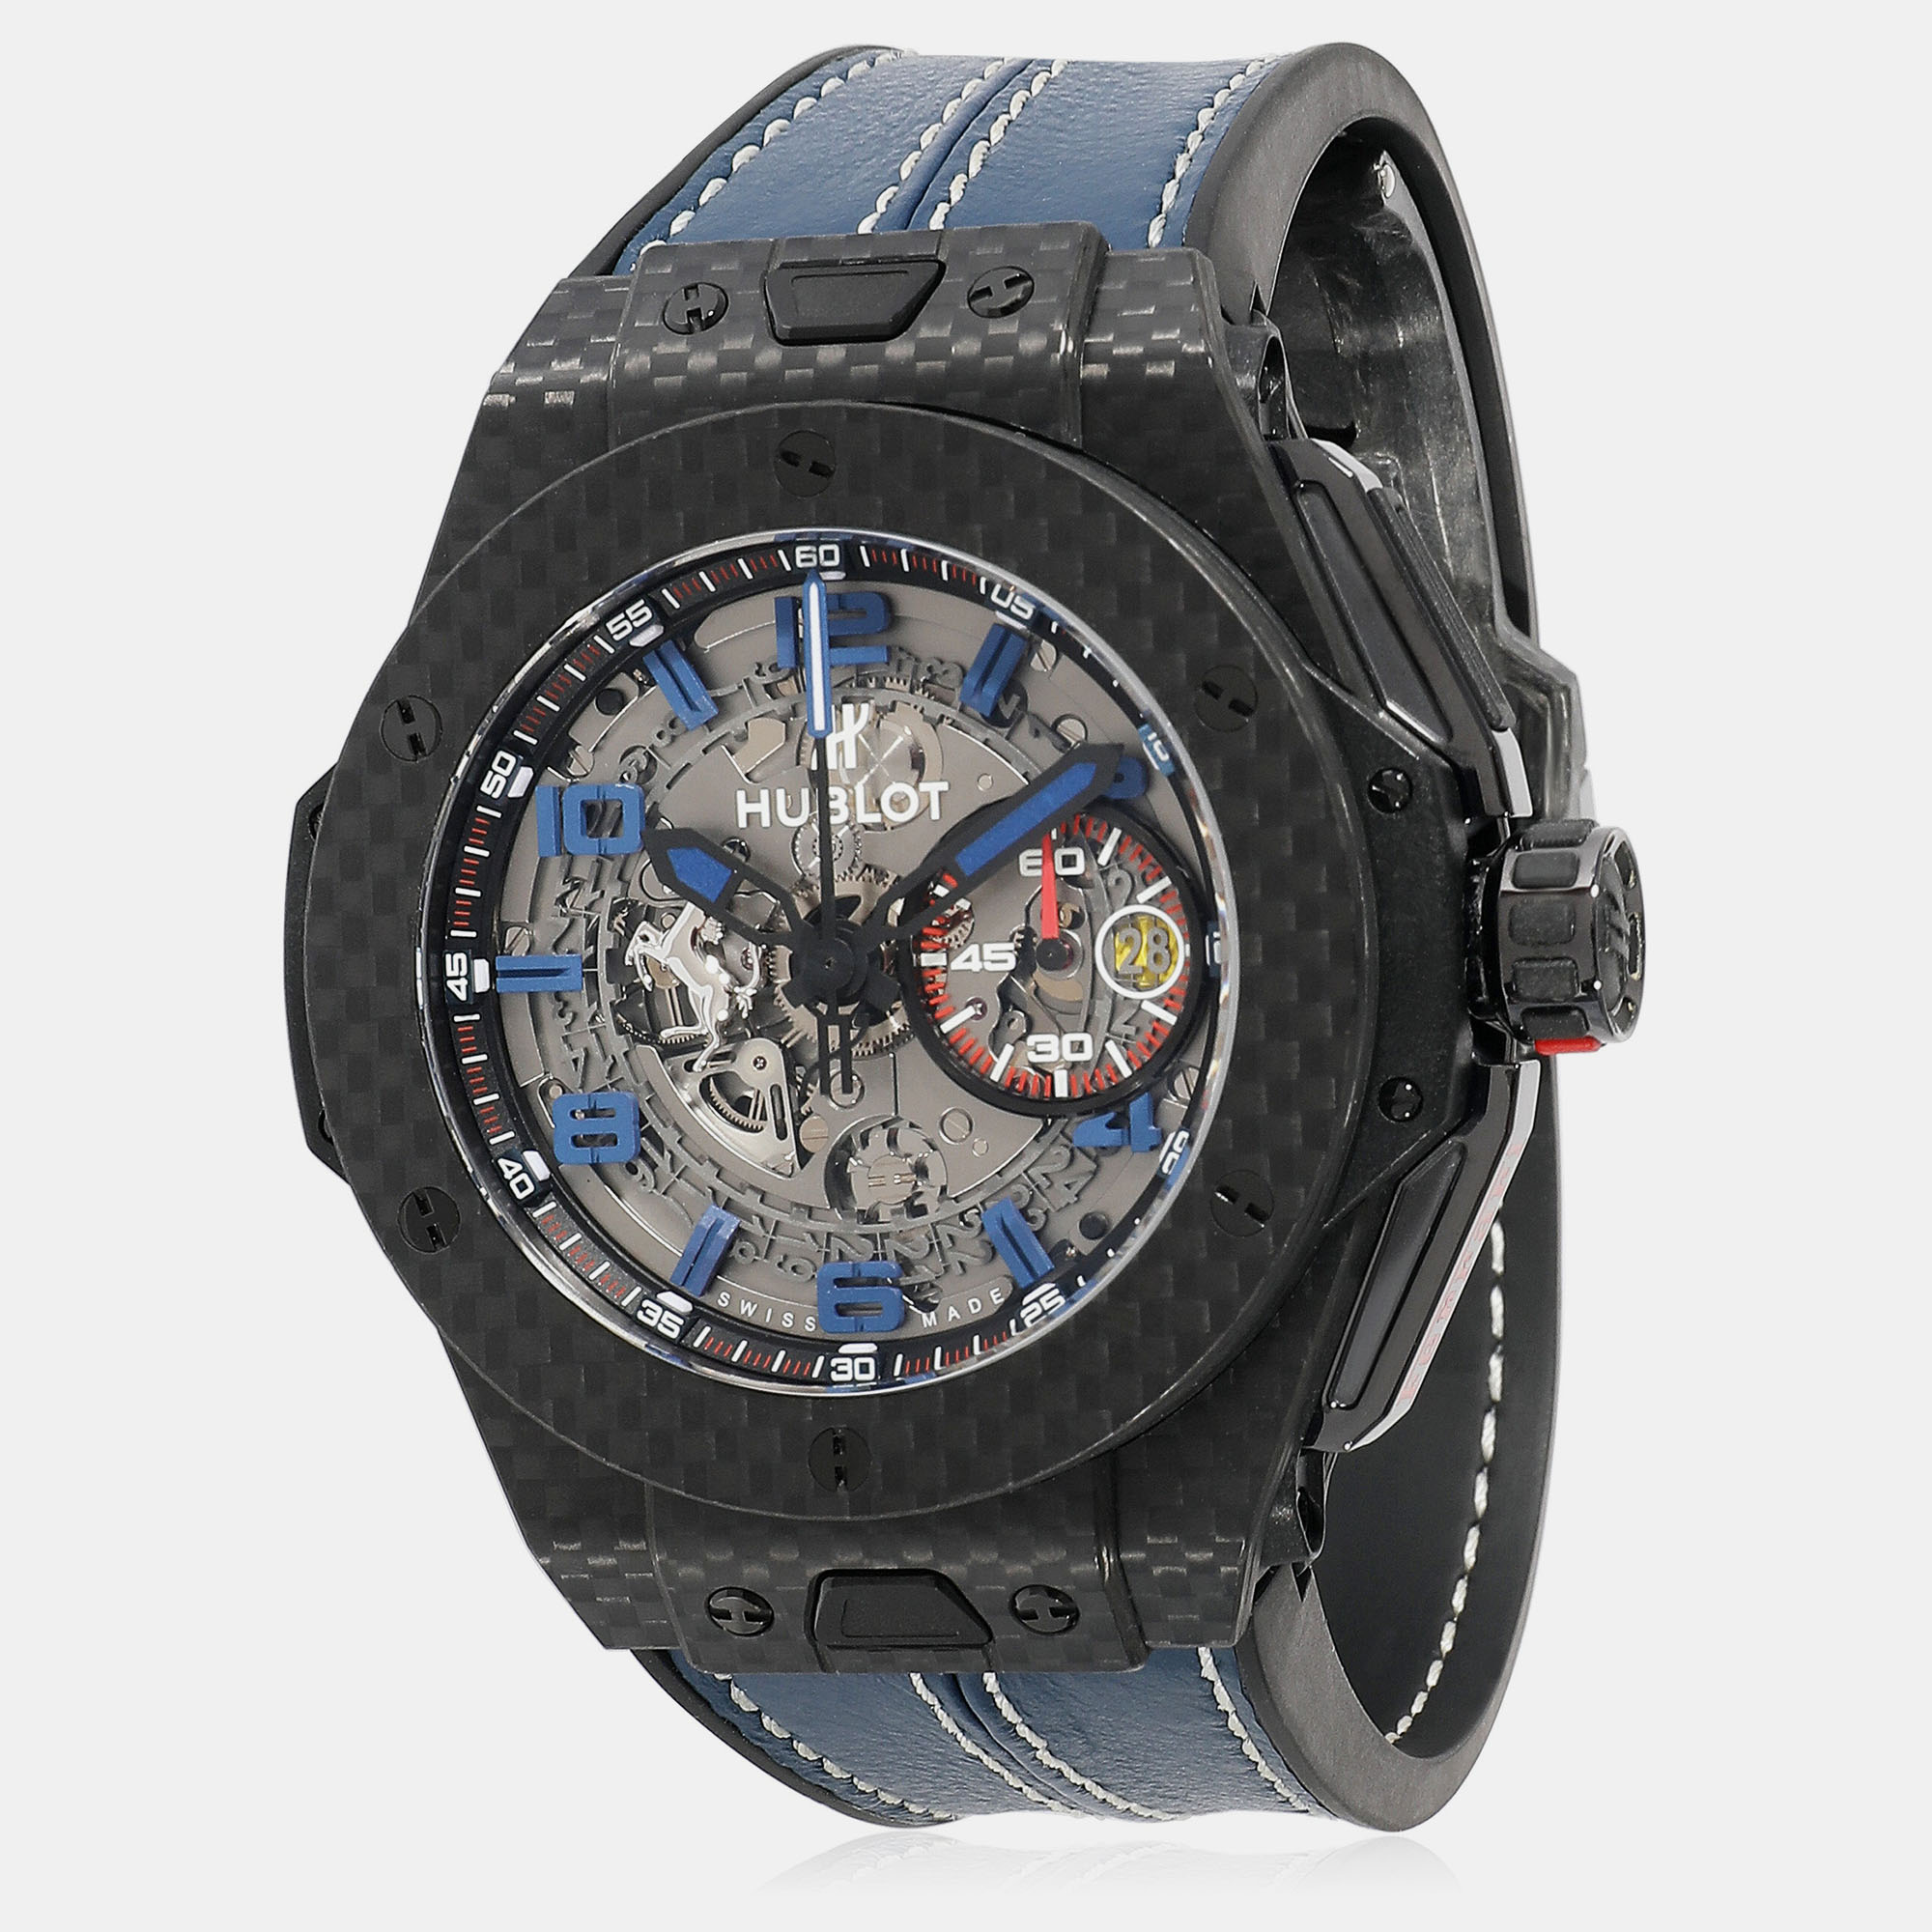 Hublot grey carbon fiber big bang ferrari 401.qx.0123.vr.fsx14 automatic men's wristwatch 45 mm